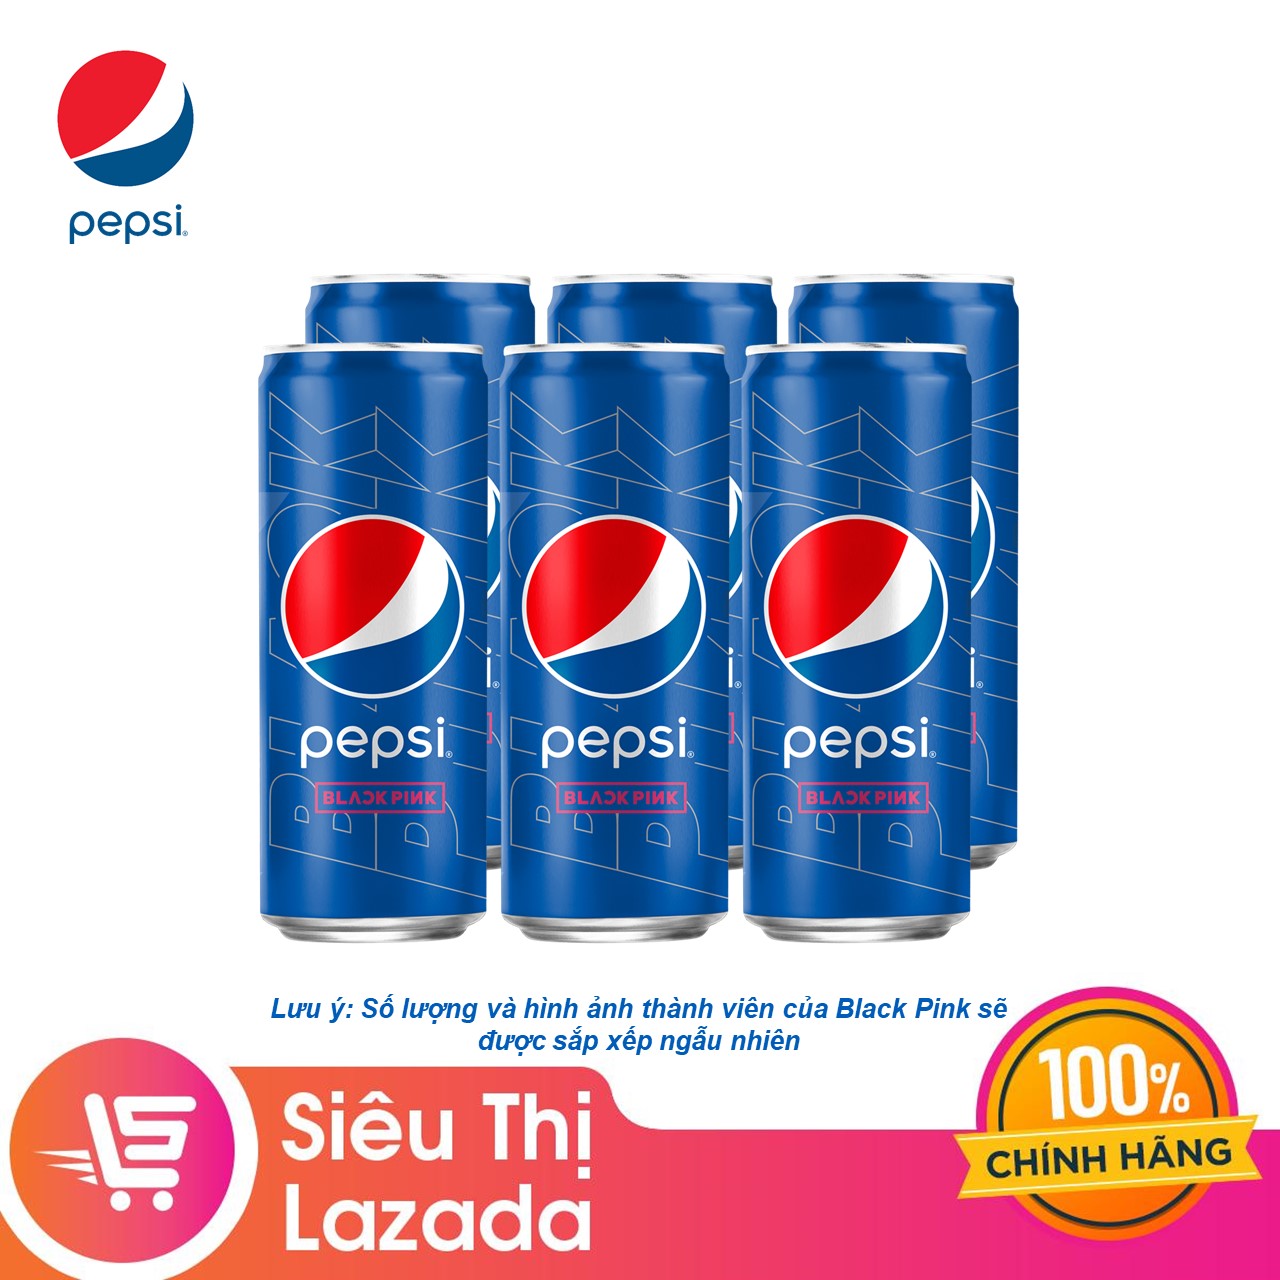 Lốc 6 lon Pepsi x Black Pink: Nếu bạn muốn trải nghiệm hương vị thú vị của Pepsi và đồng thời giảm thiểu chi phí, lốc 6 lon Pepsi x Black Pink sẽ là sự lựa chọn hoàn hảo cho bạn. Không chỉ thực sự ngon miệng, mà bạn còn được tặng kèm những hình ảnh đẹp mắt của Blackpink nữa đó.